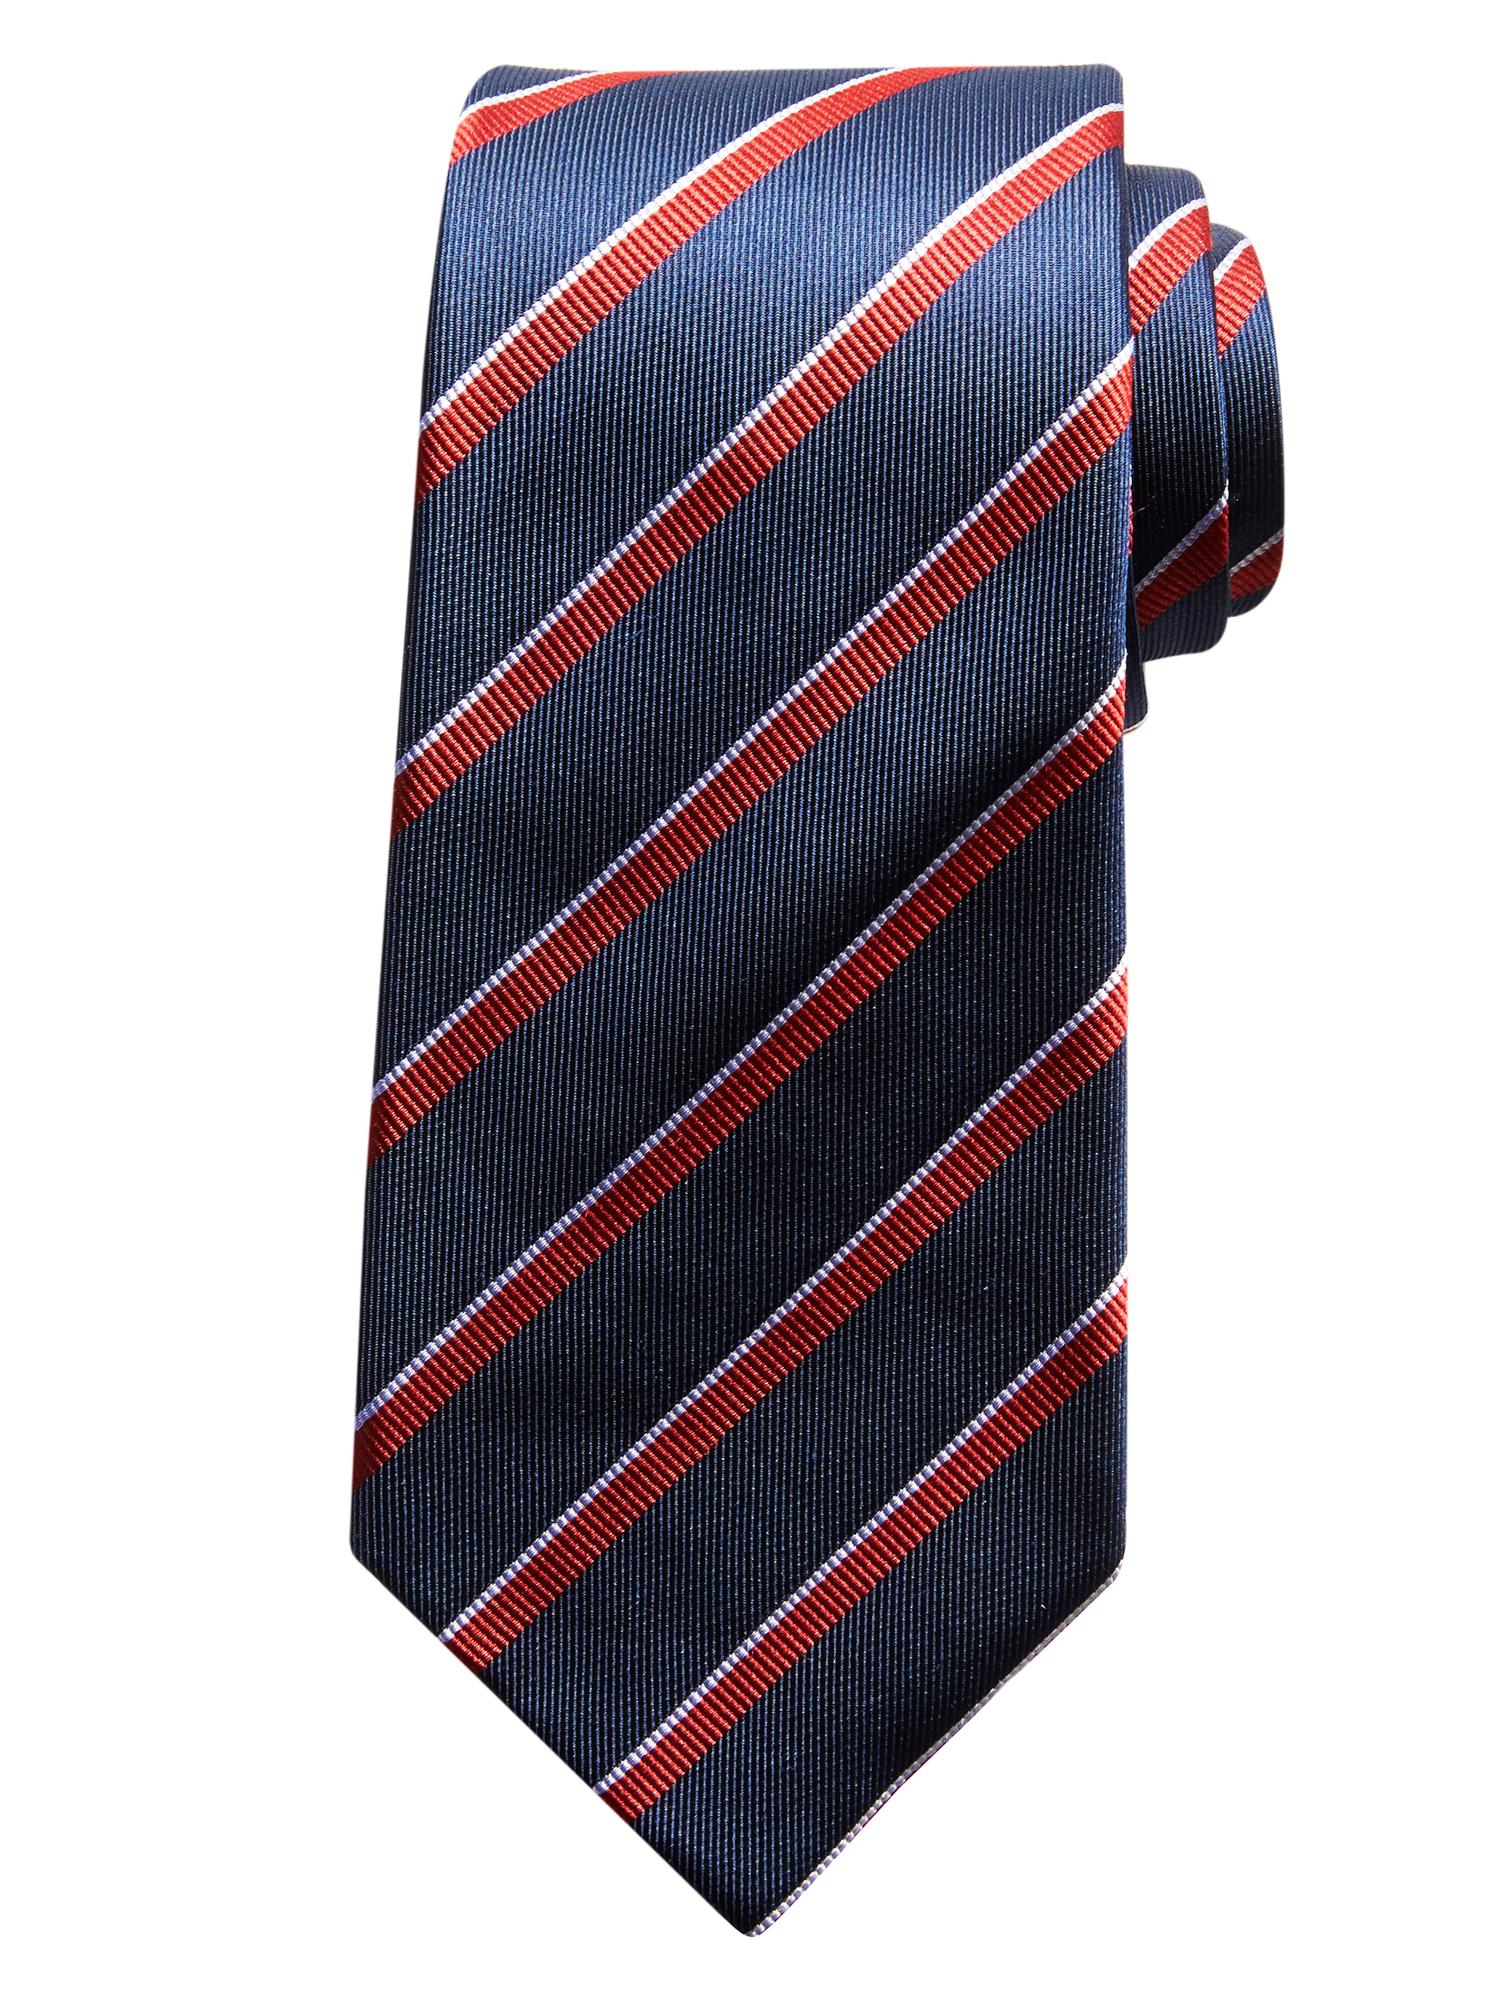 Two-Color Striped Silk Tie